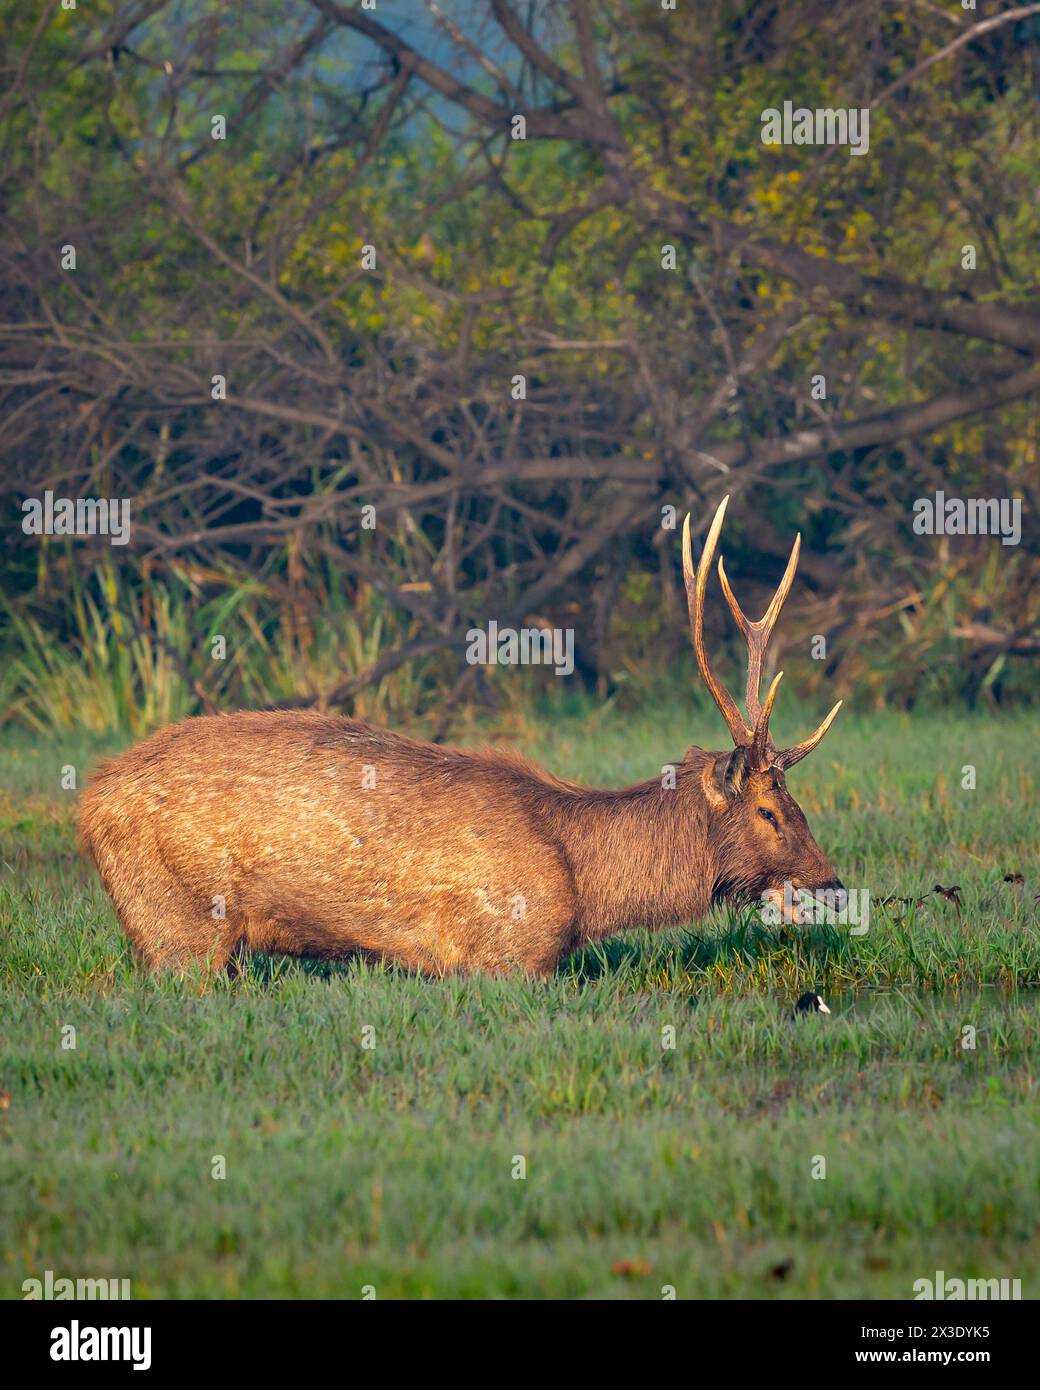 Cervo Sambar maschio selvatico o rusa unicolor con grandi corna lunghe in una scenografica zona umida nella foresta o nel parco nazionale dell'india Foto Stock